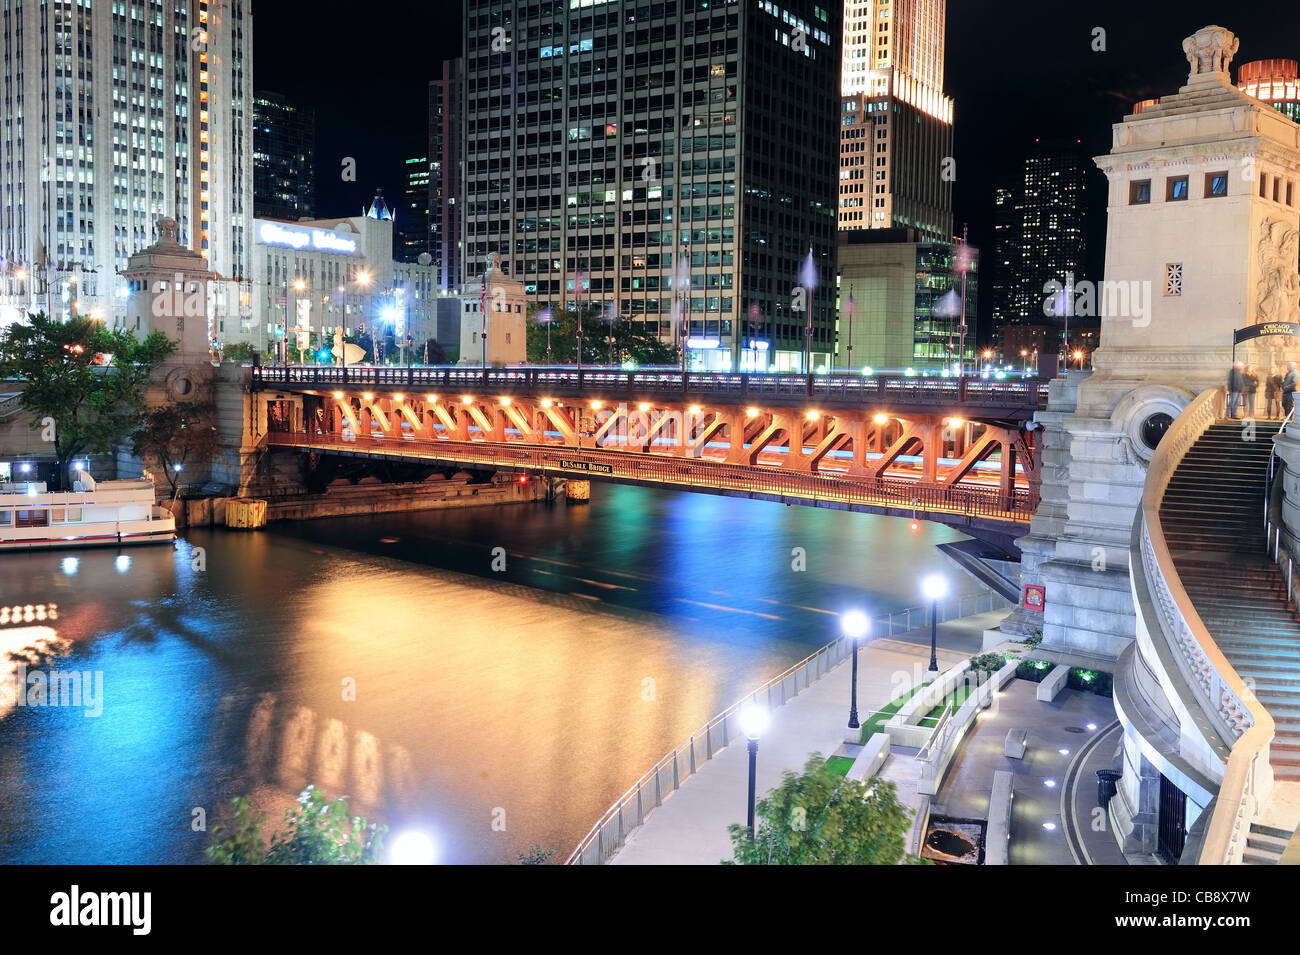 La rivière Chicago à pied avec les gratte-ciel et le pont illuminé par des lumières et de l'eau nuit à la réflexion. Banque D'Images